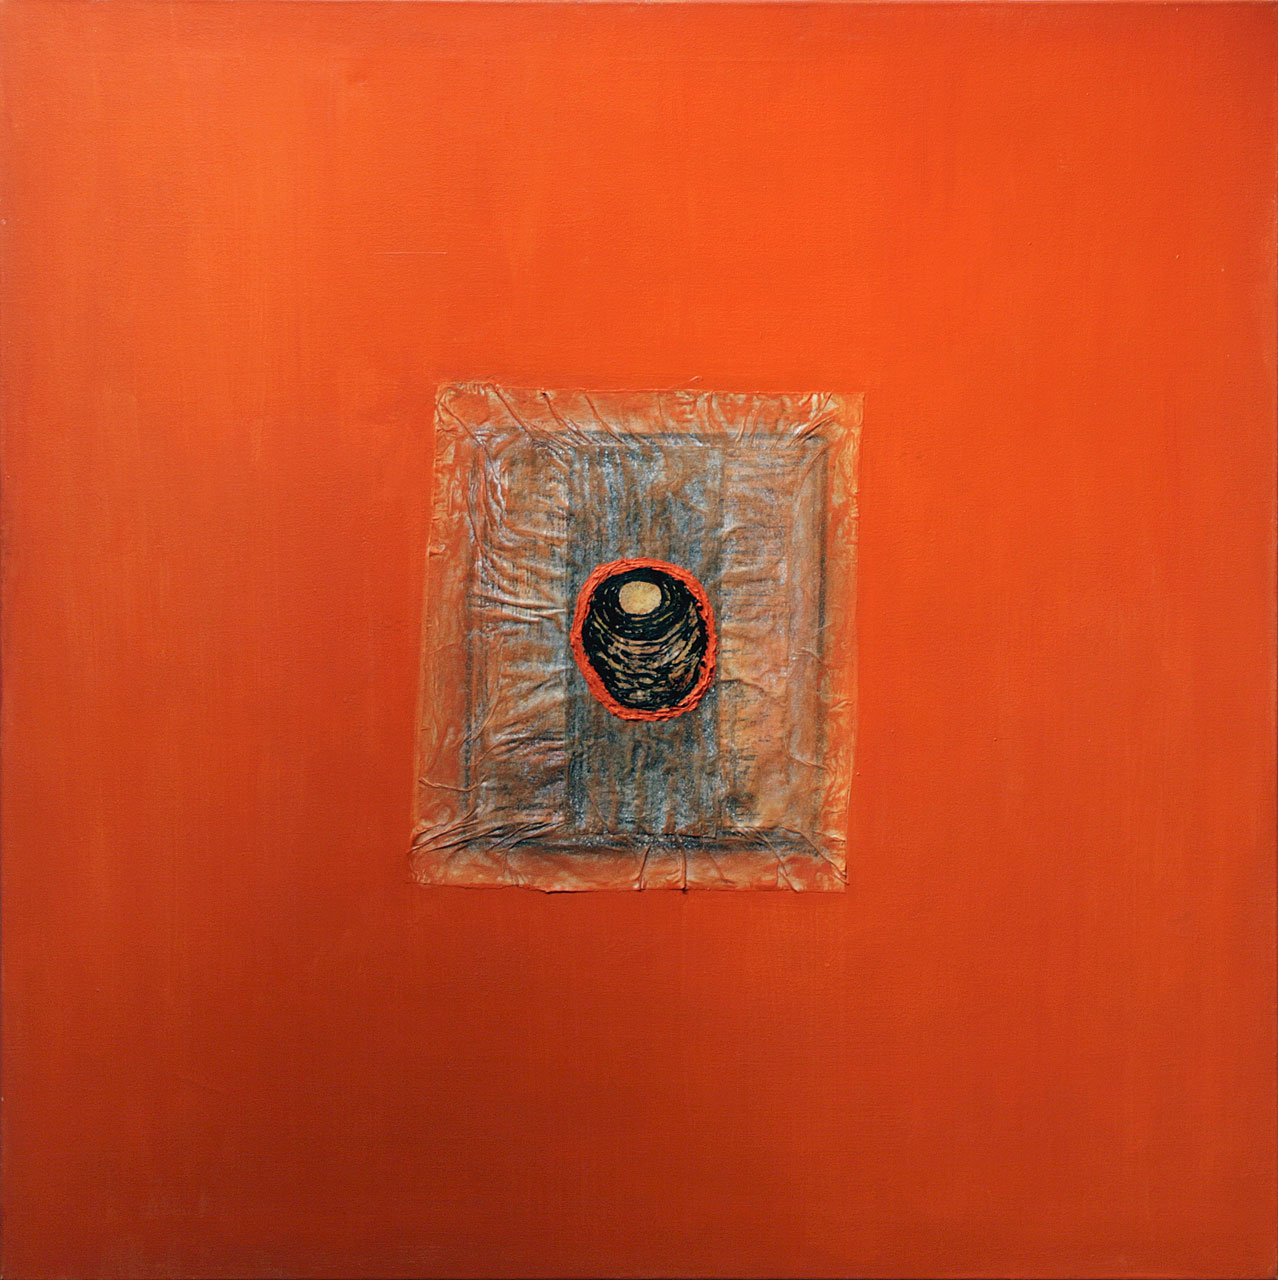 Nid sur fond orange, Francine Migner. 2006. Techniques mixtes sur toile. 91,3 x 91,3 cm. © L'Artothèque